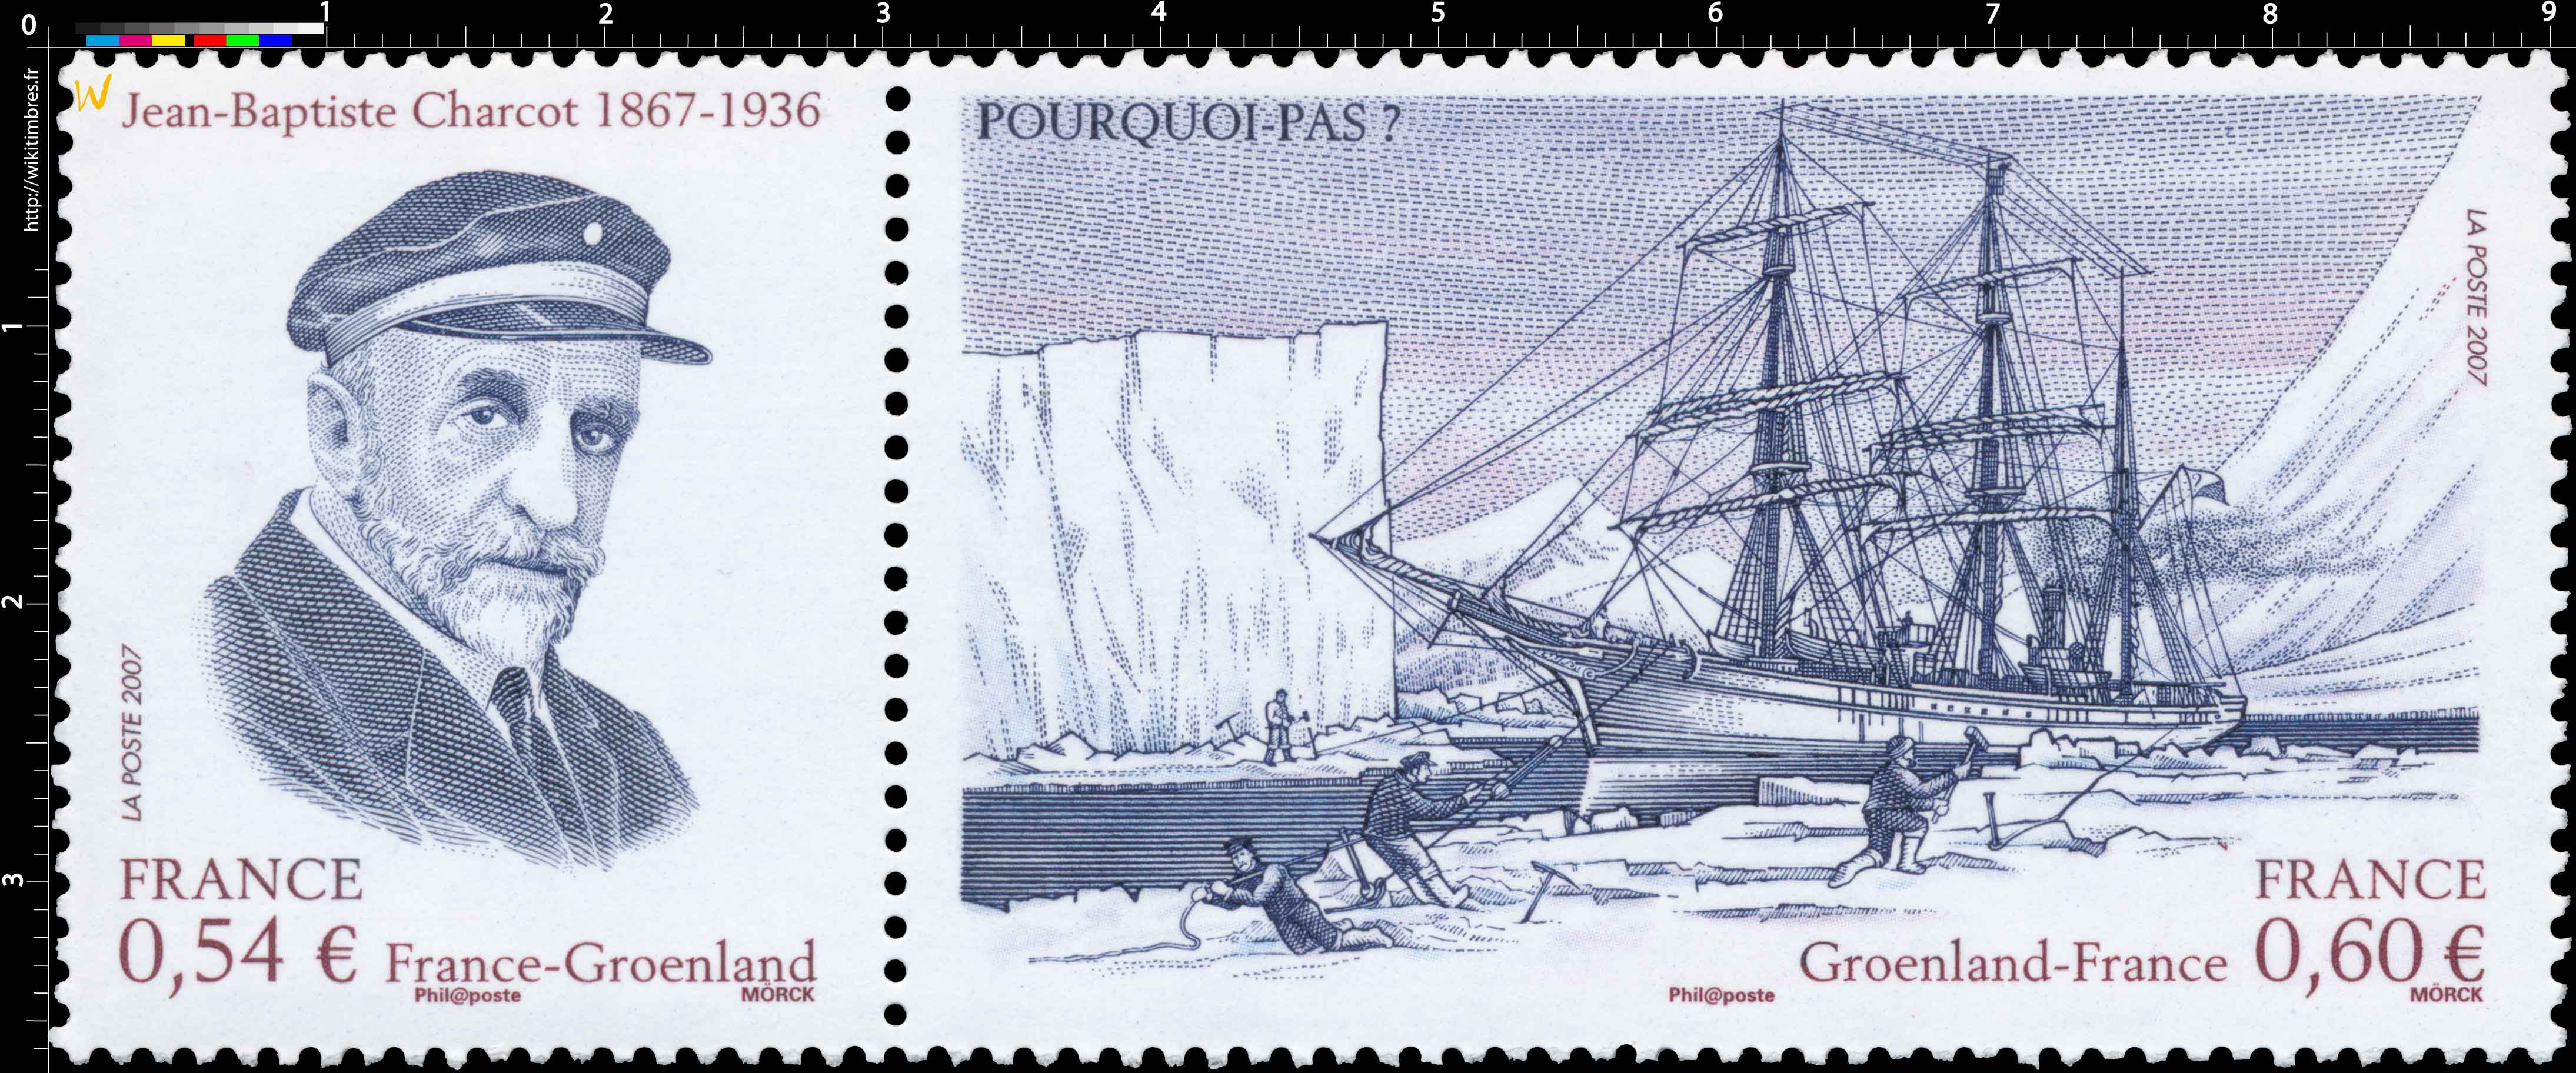 2007 Jean-Baptiste Charcot 1867-1936 France-Groenland POURQUOI-PAS ?